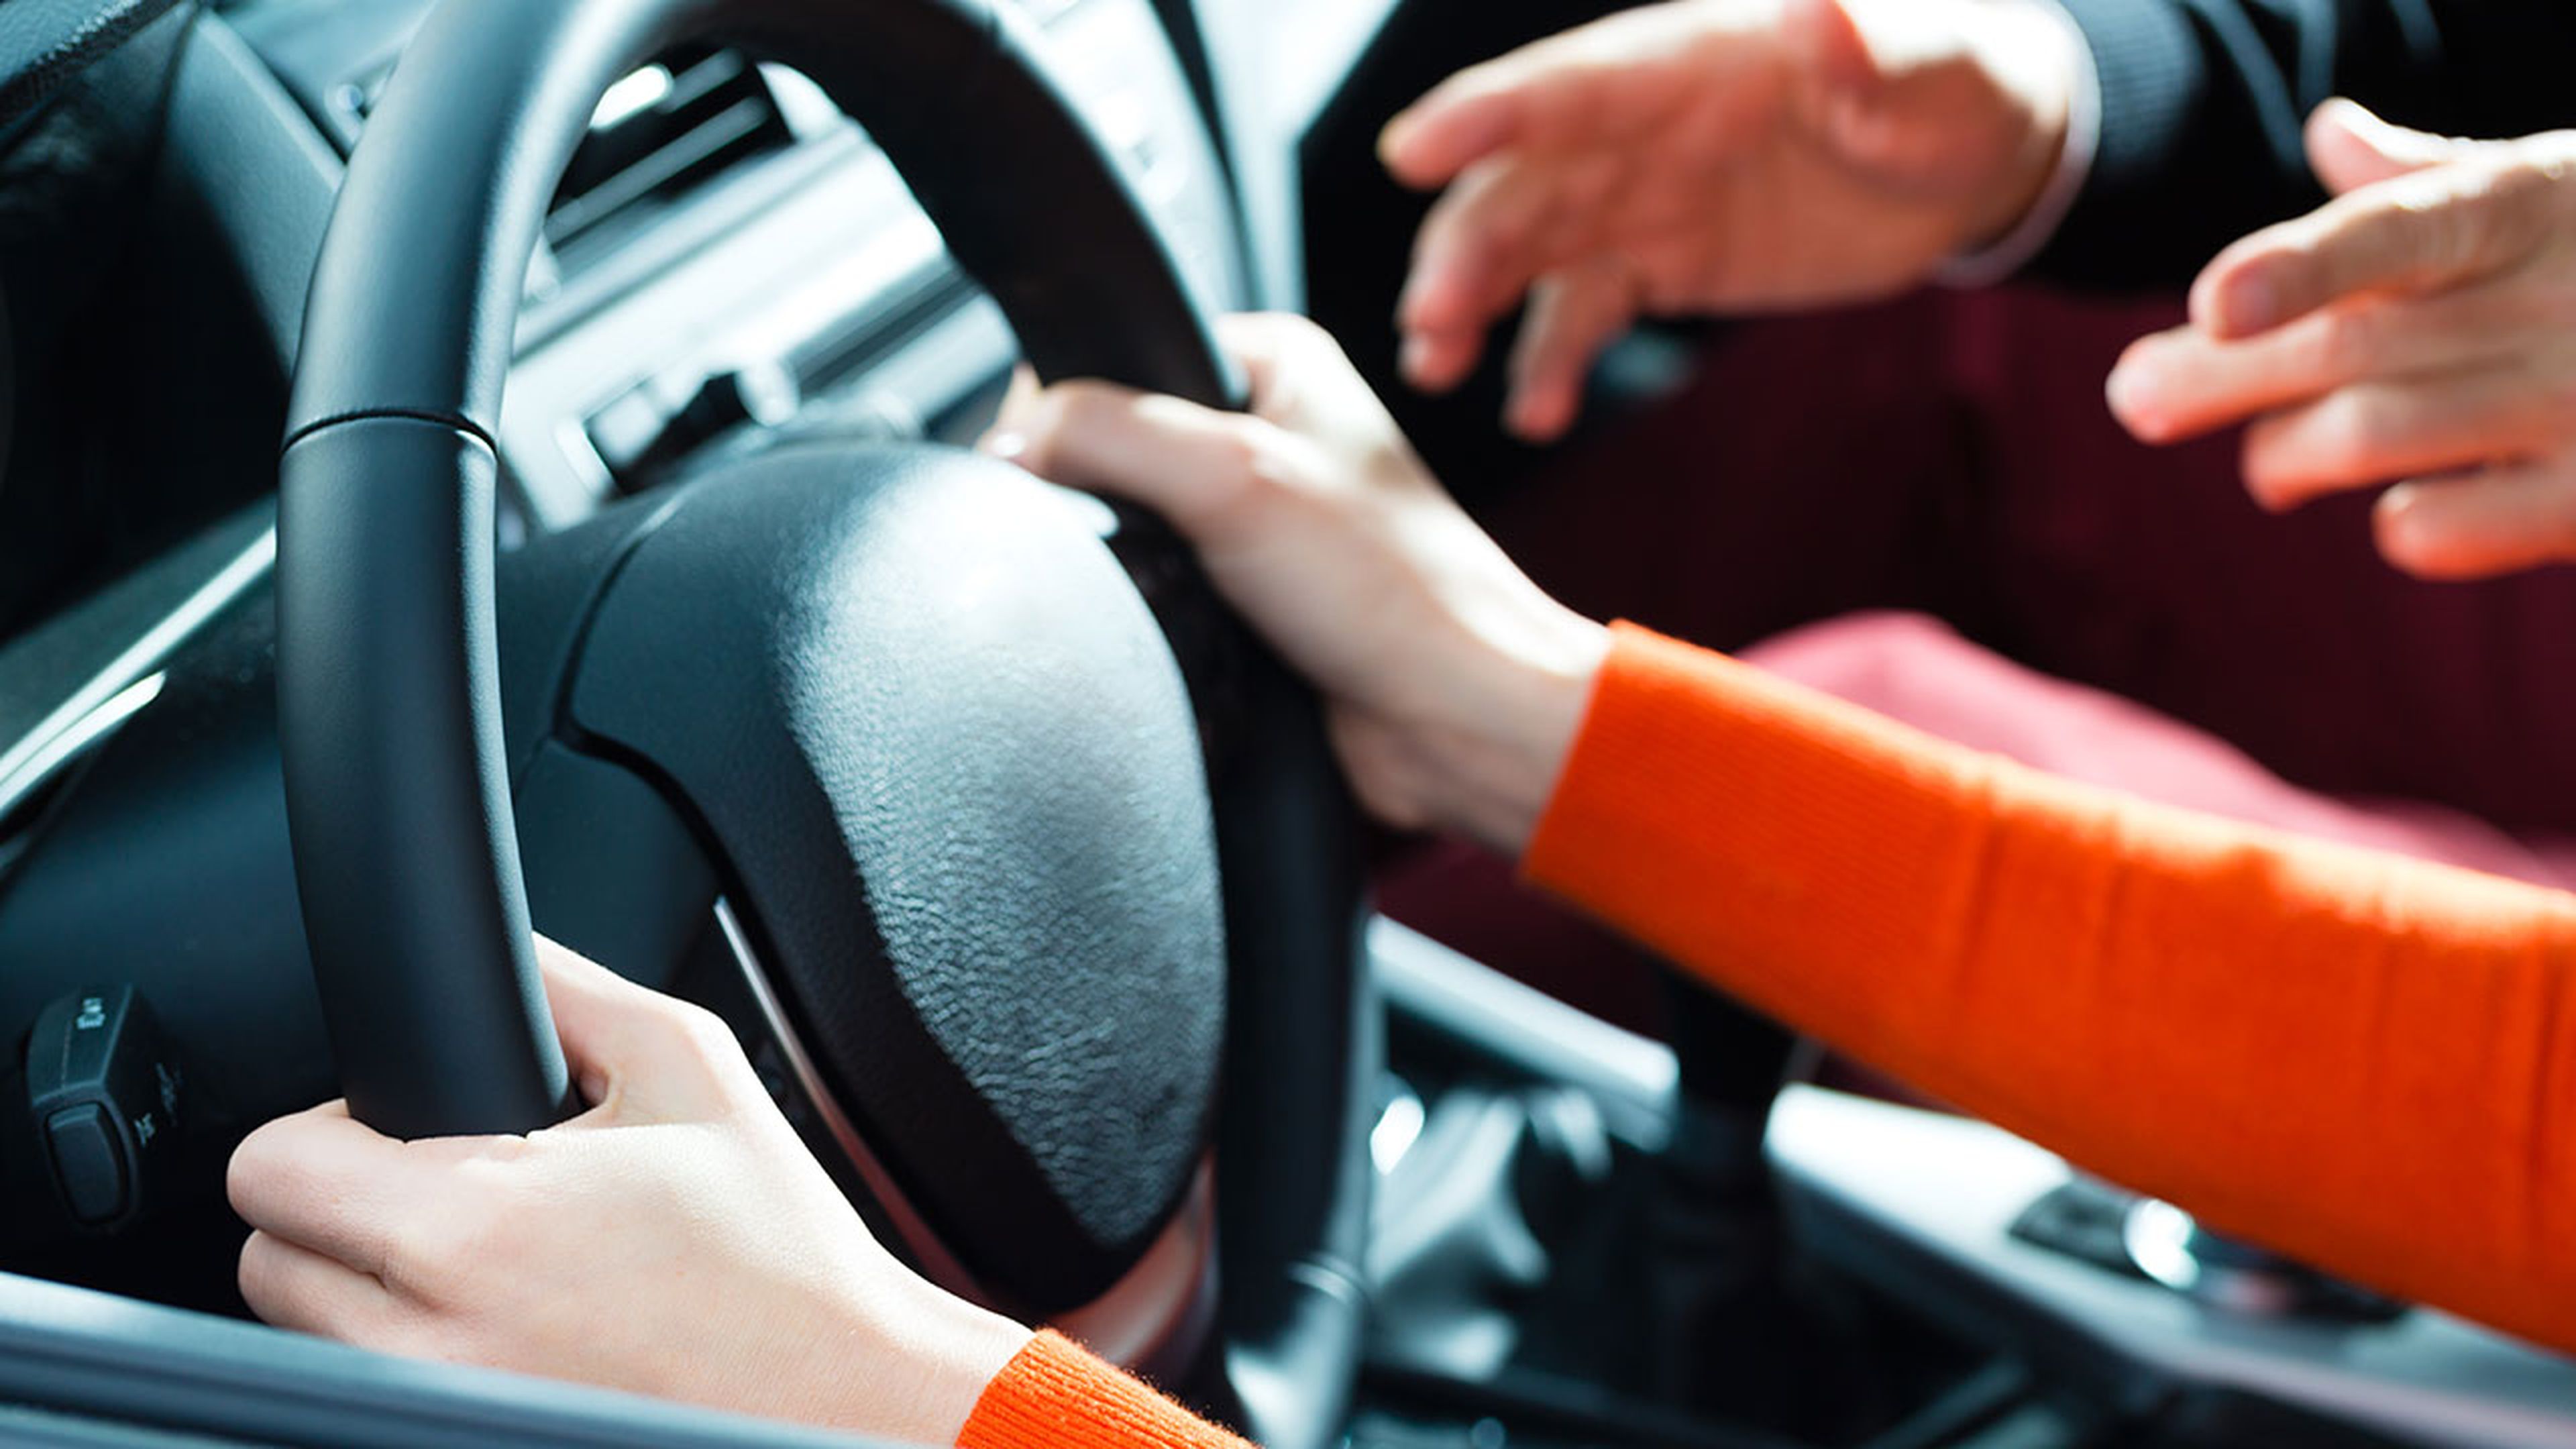 Autoescuelas, examen de conducir, comprar coche… Así han cambiado por el coronavirus